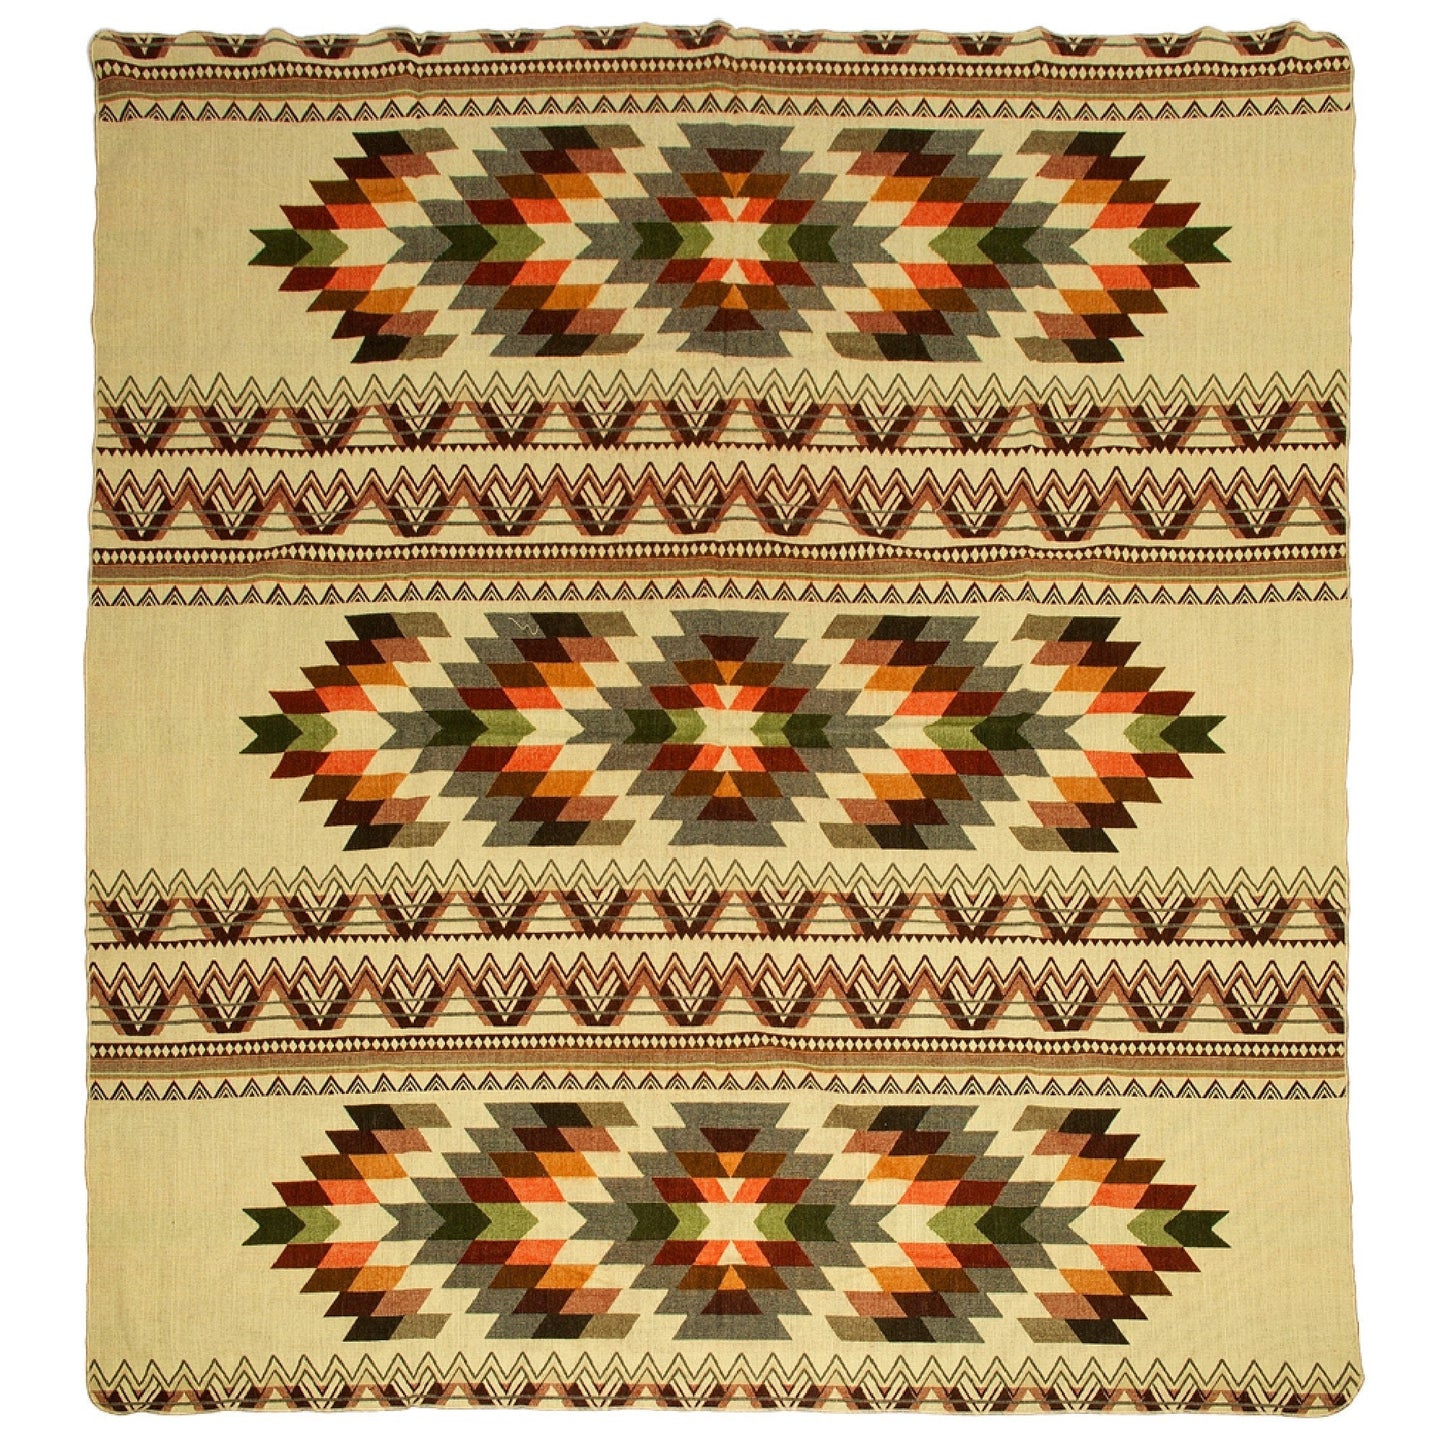 Ecuadorian alpaca blanket | native blanket |  Antisana Green